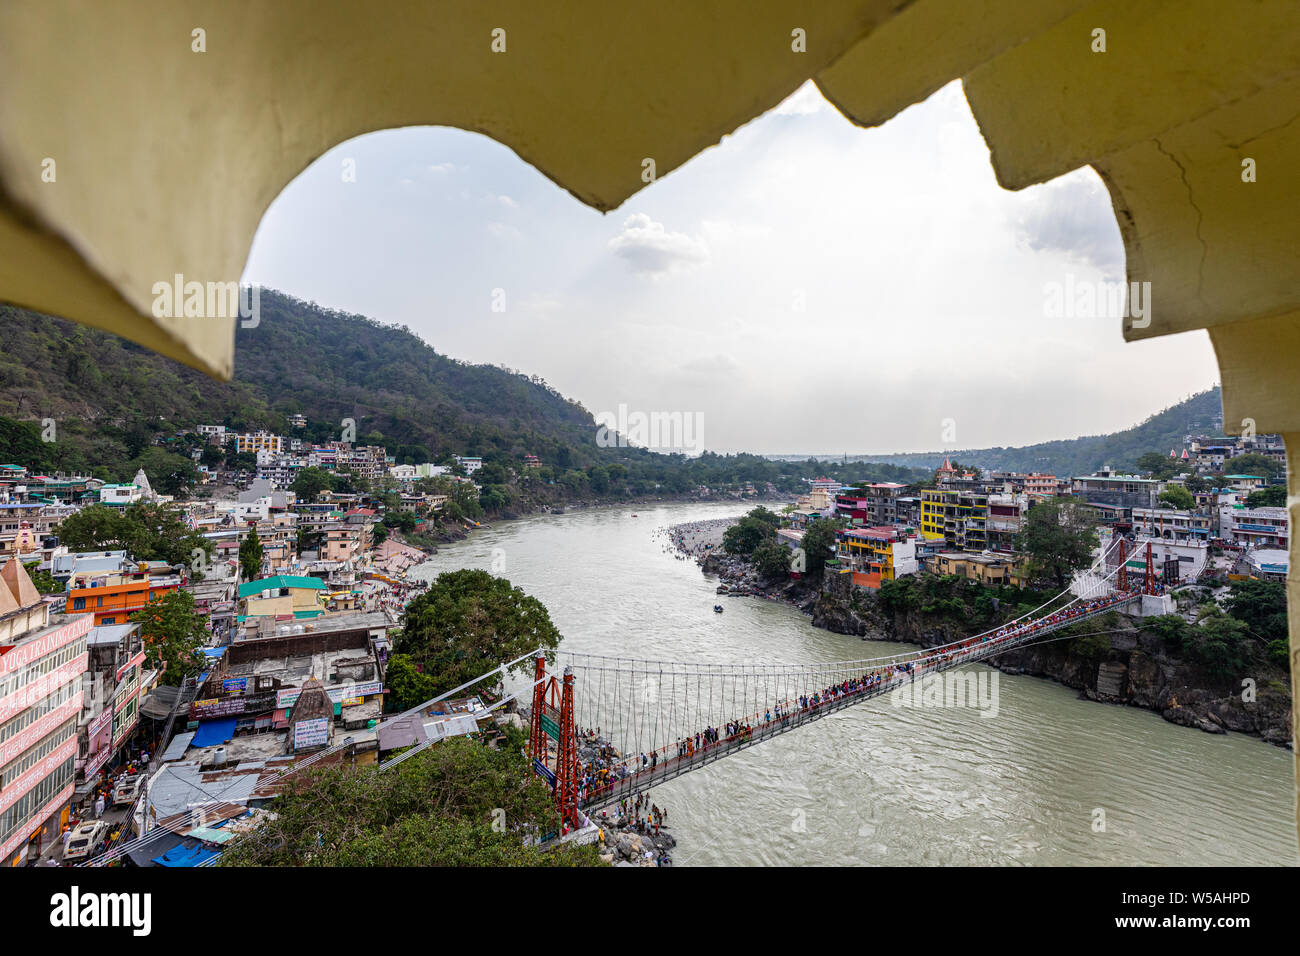 Avis de Laxman Jhula à travers le fleuve Ganges dans la ville spirituelle de Rishikesh dans l'état d'Uttarakhand en Inde Banque D'Images